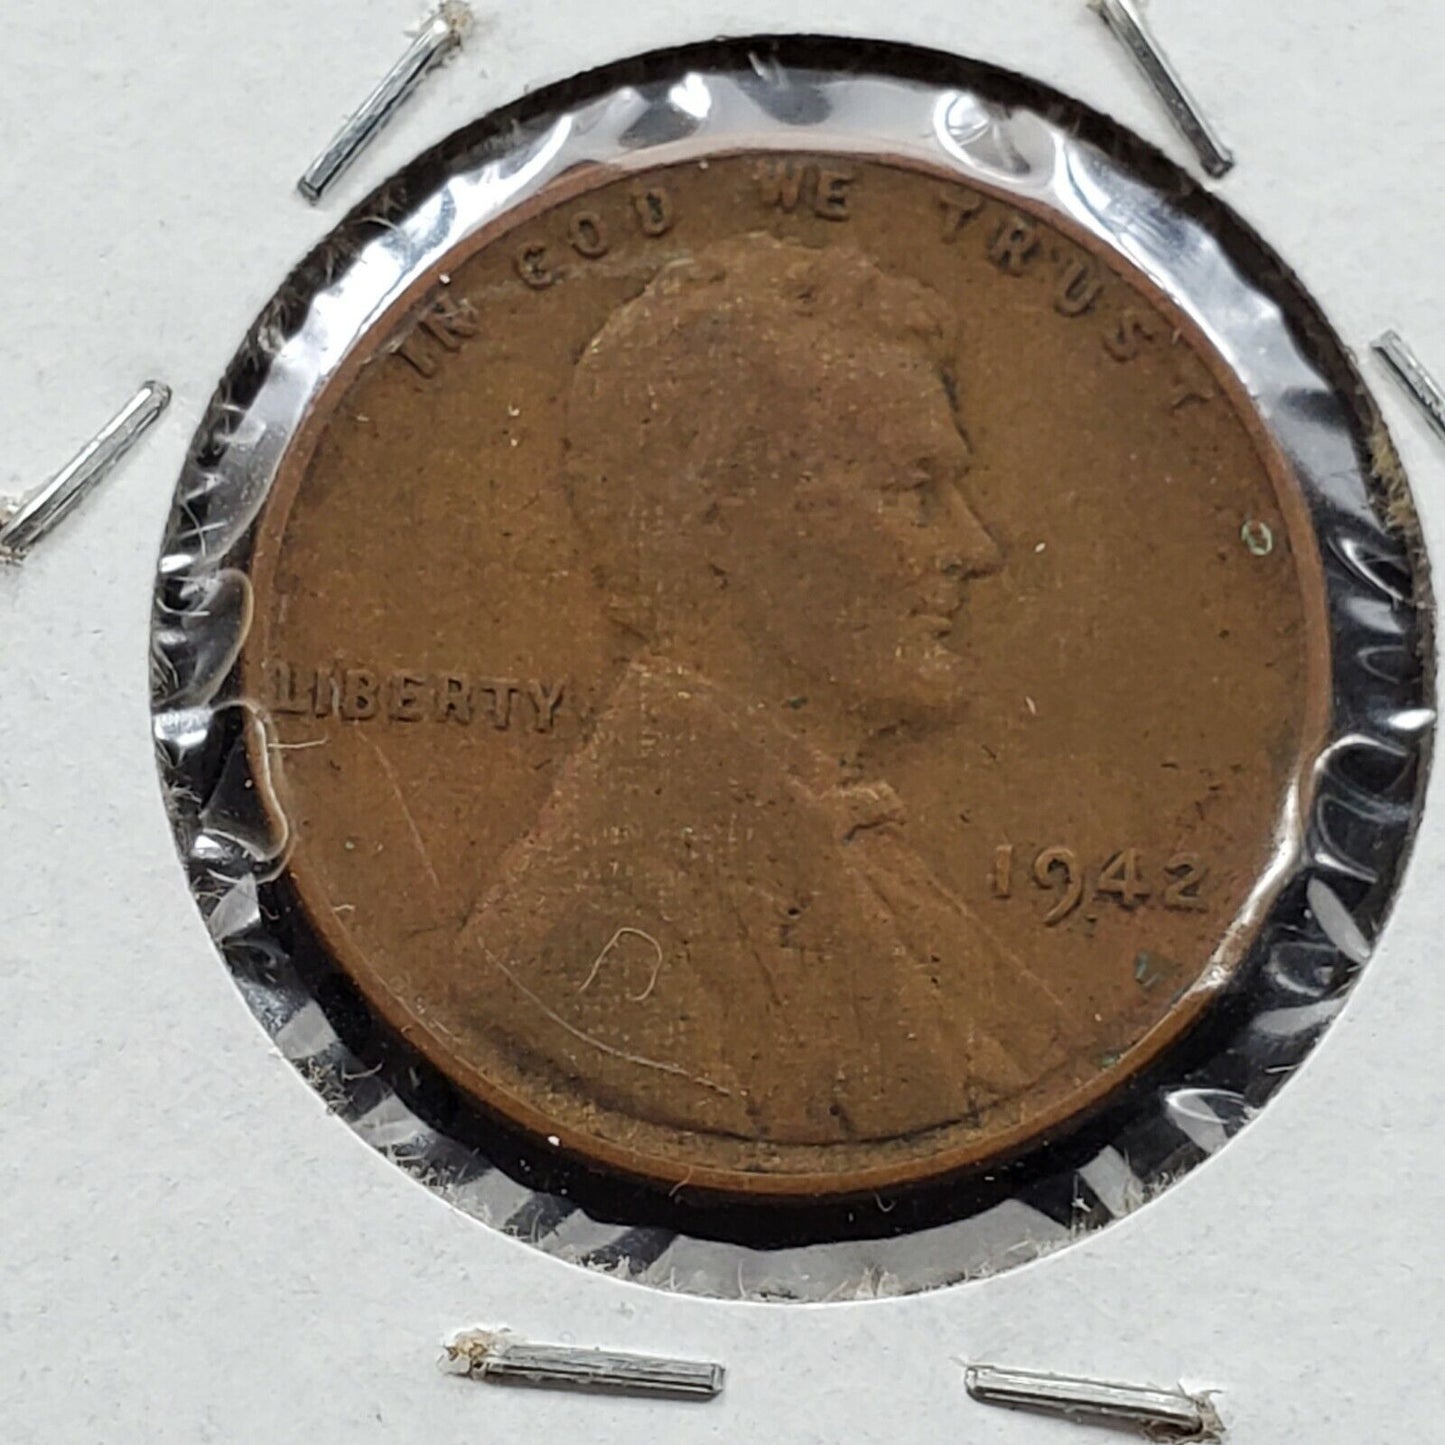 1942 P 1c Lincoln Wheat Cent Error Coin Major Laminated Planchet WW2 Era